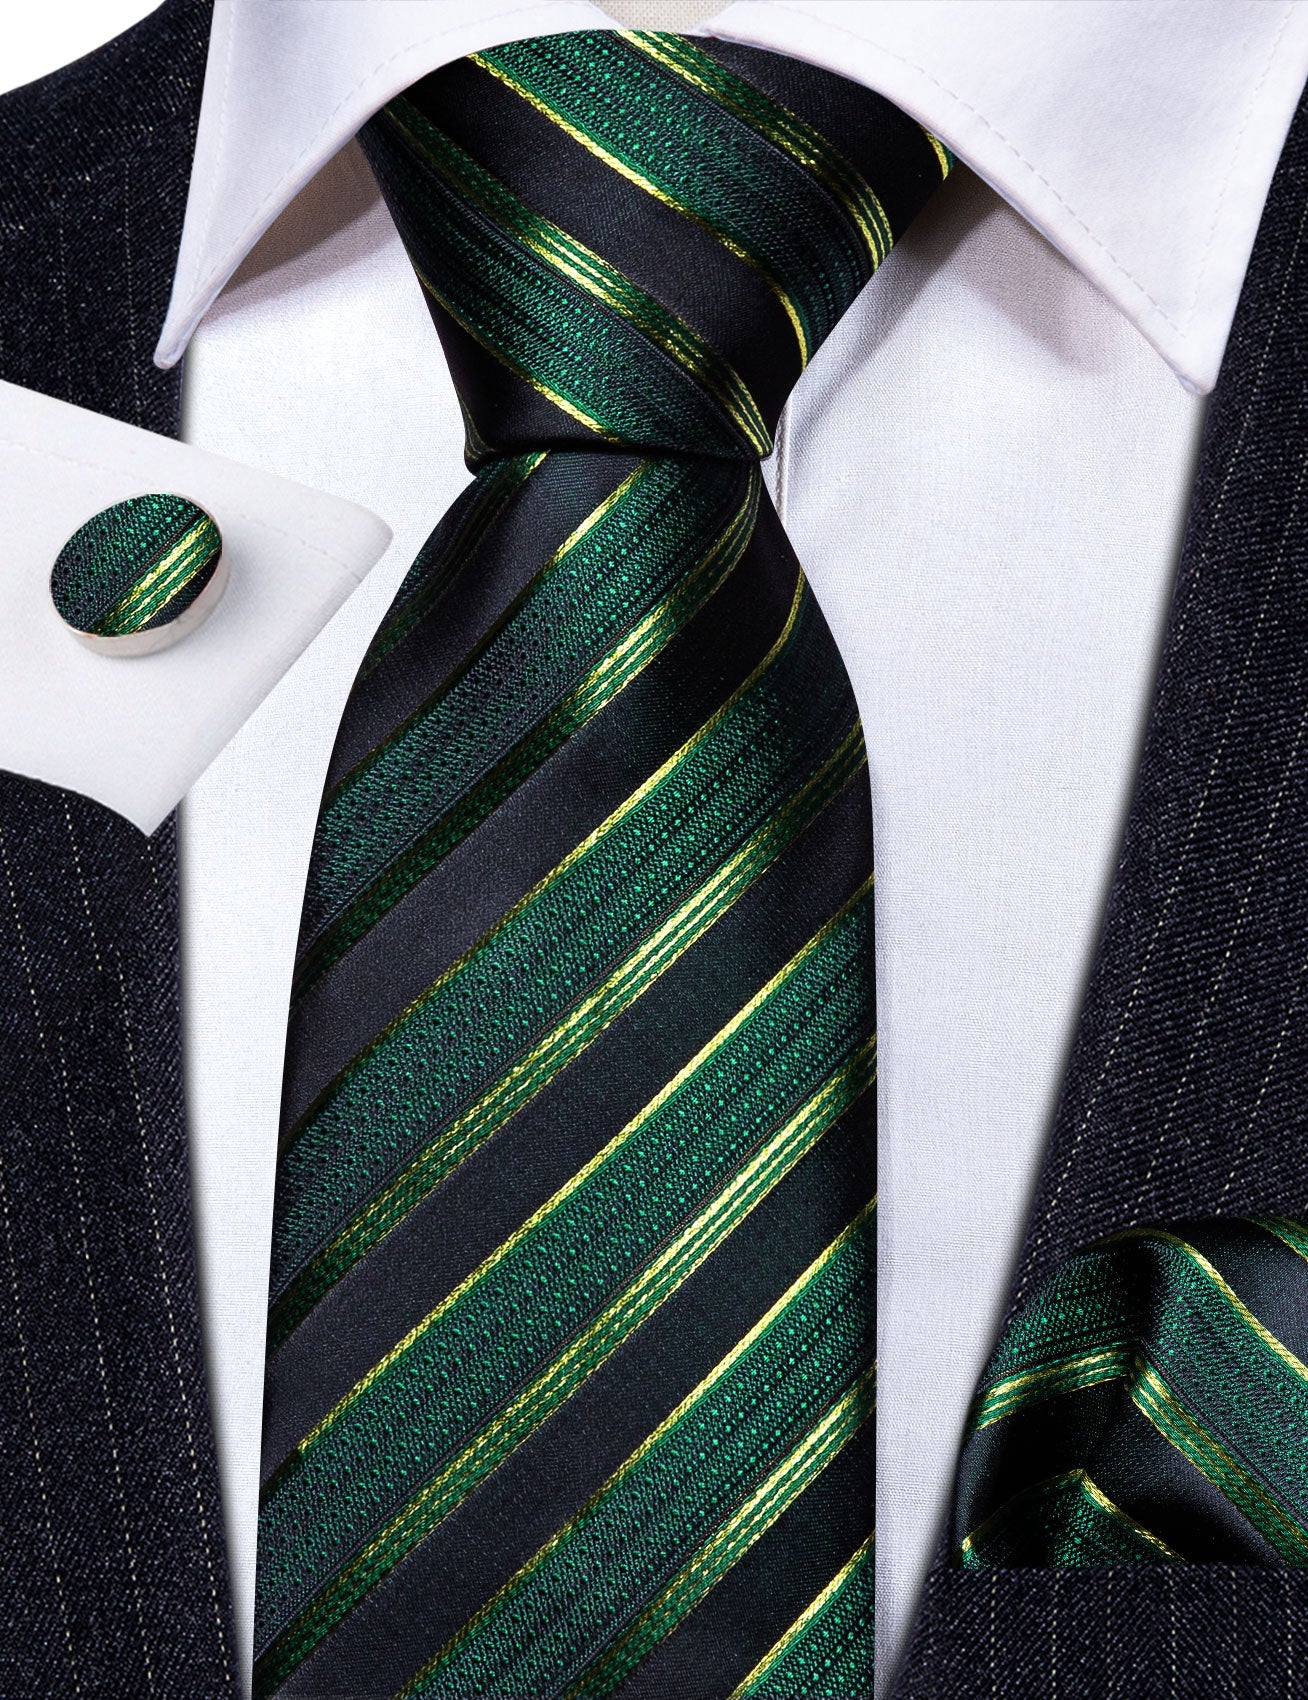 Green Black Striped Silk Tie Handkerchief Cufflinks Set